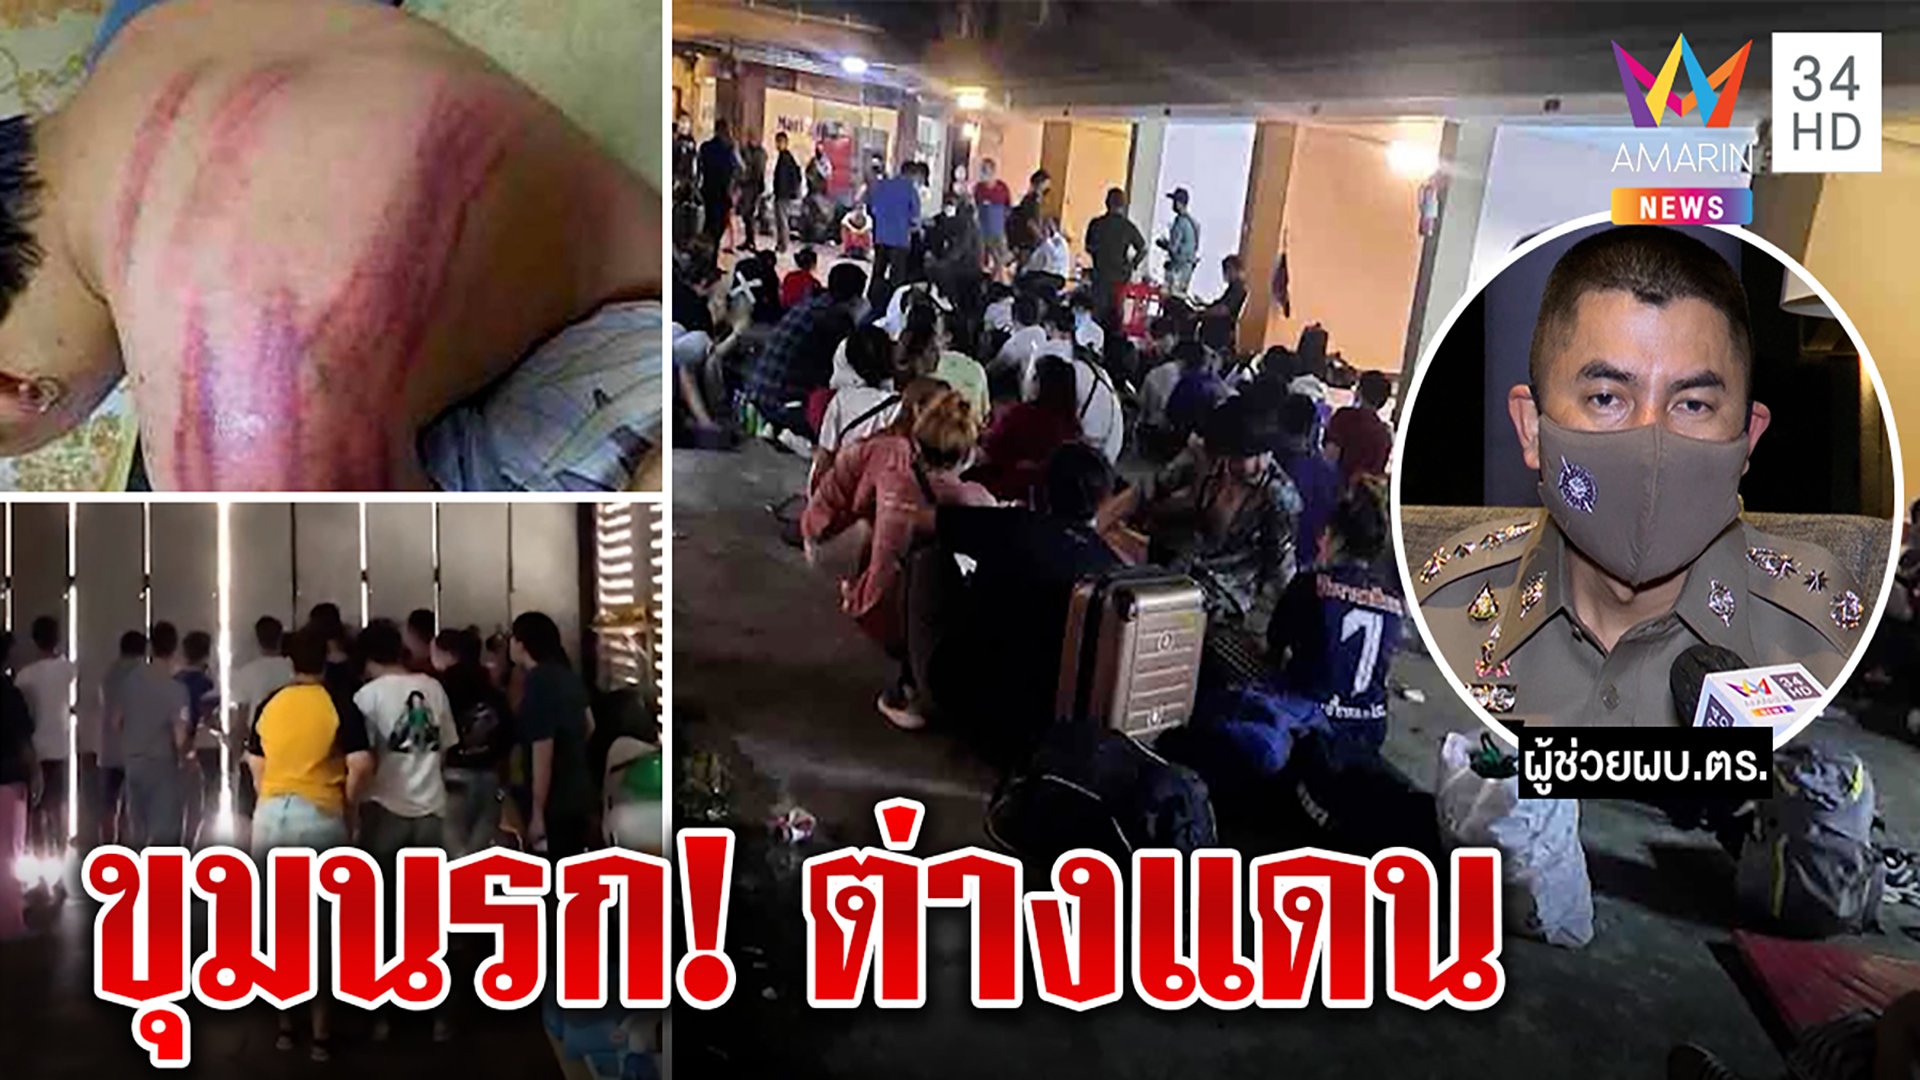 คนไทยนับร้อยพังประตูหนี ถูกแก๊งหลอกทำงานคอลเซ็นเตอร์ โหดอุ้ม-เฆี่ยน-จับขายตัว | ทุบโต๊ะข่าว | 18 พ.ย. 64 | AMARIN TVHD34